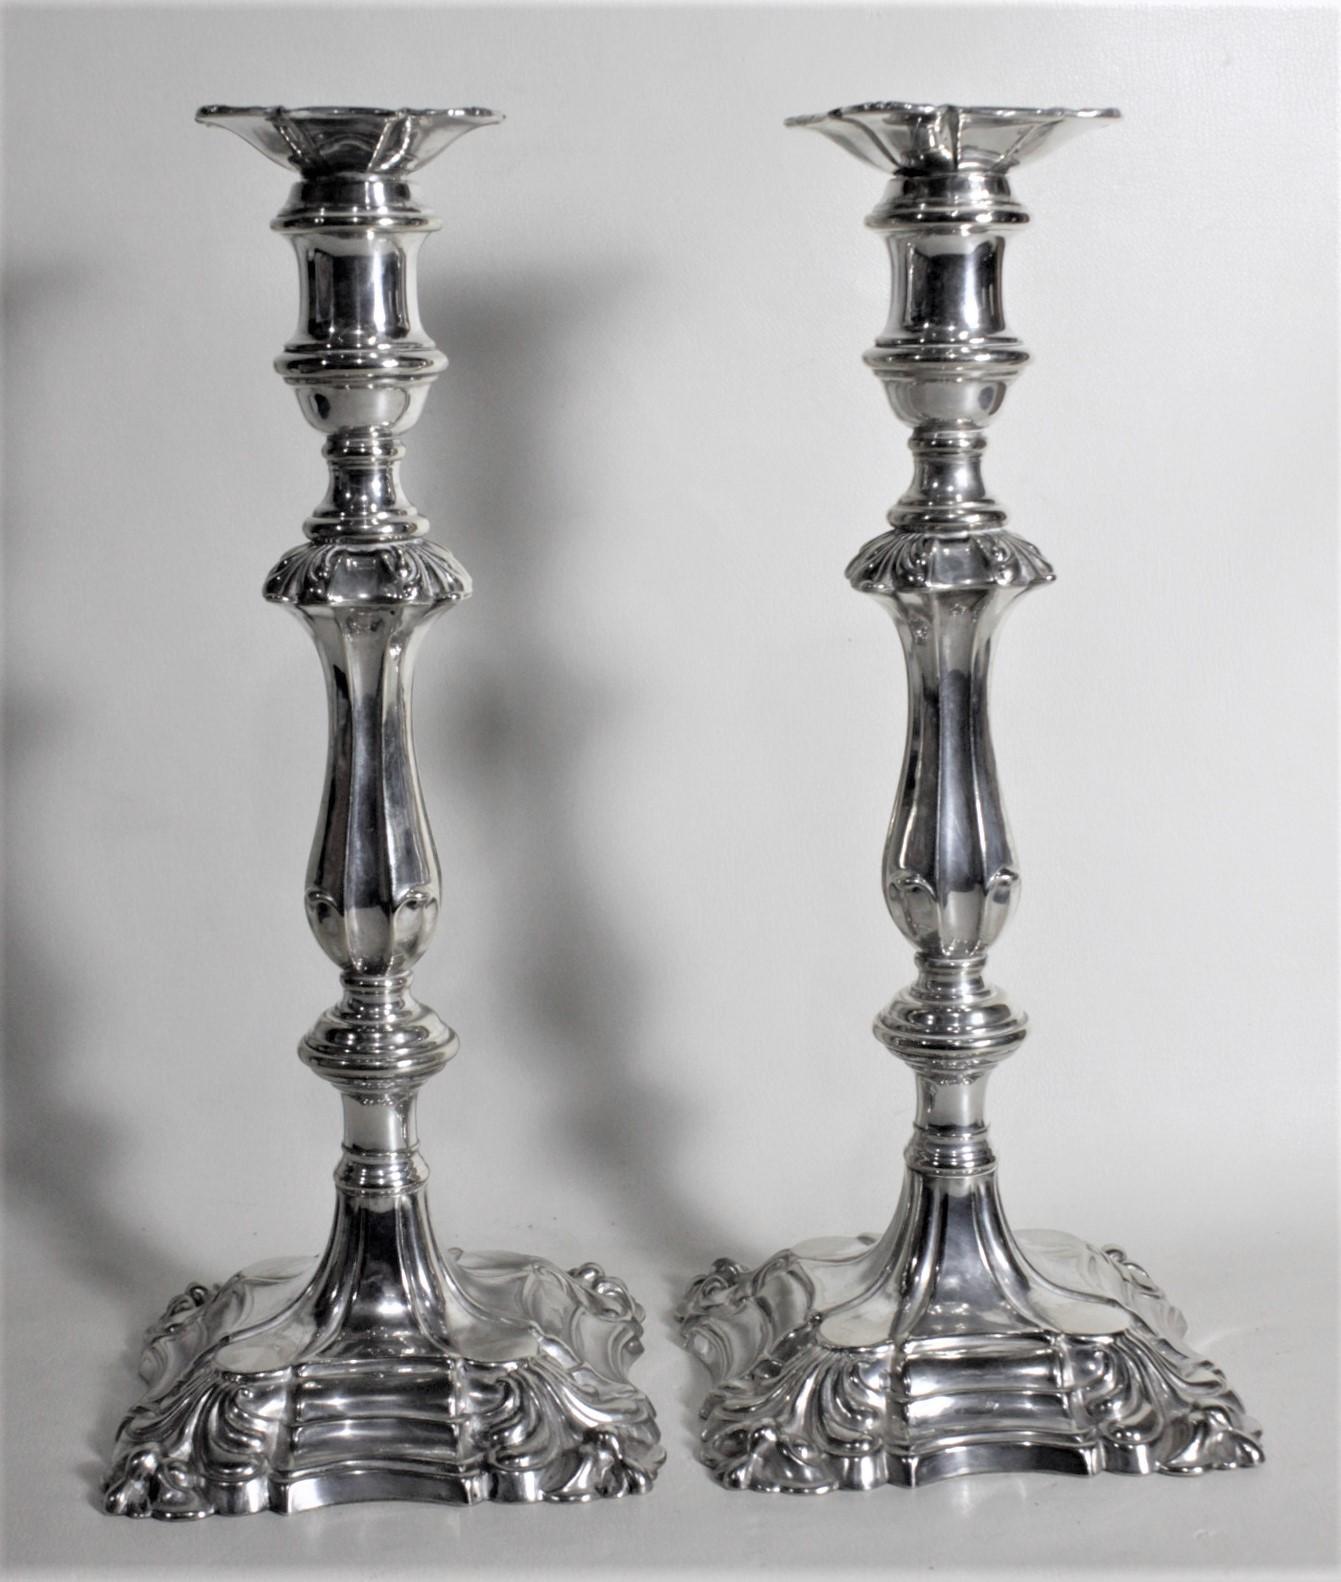 Cette paire de chandeliers anciens en métal argenté porte le poinçon 